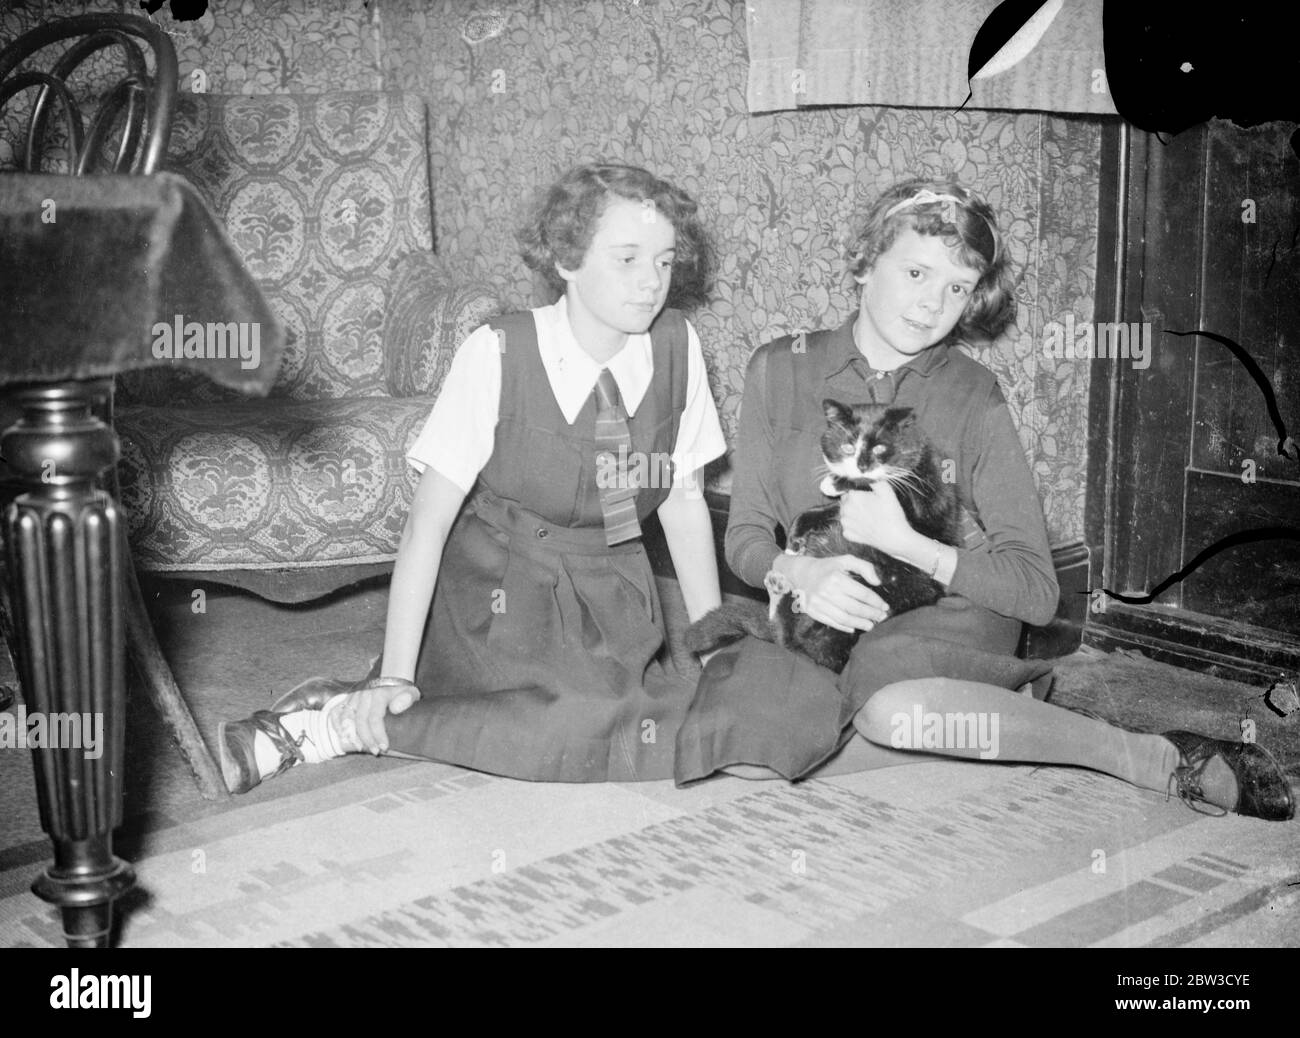 Padre di Freddie Bartholomew , attore di London boy , vuole riportare il figlio da Hollywood . Hilde , di 13 anni ( a sinistra ) e Eileen , di 15 , sorelle di Freddie Bartholomew , nella loro casa londinese . 16 ottobre 1935 Foto Stock